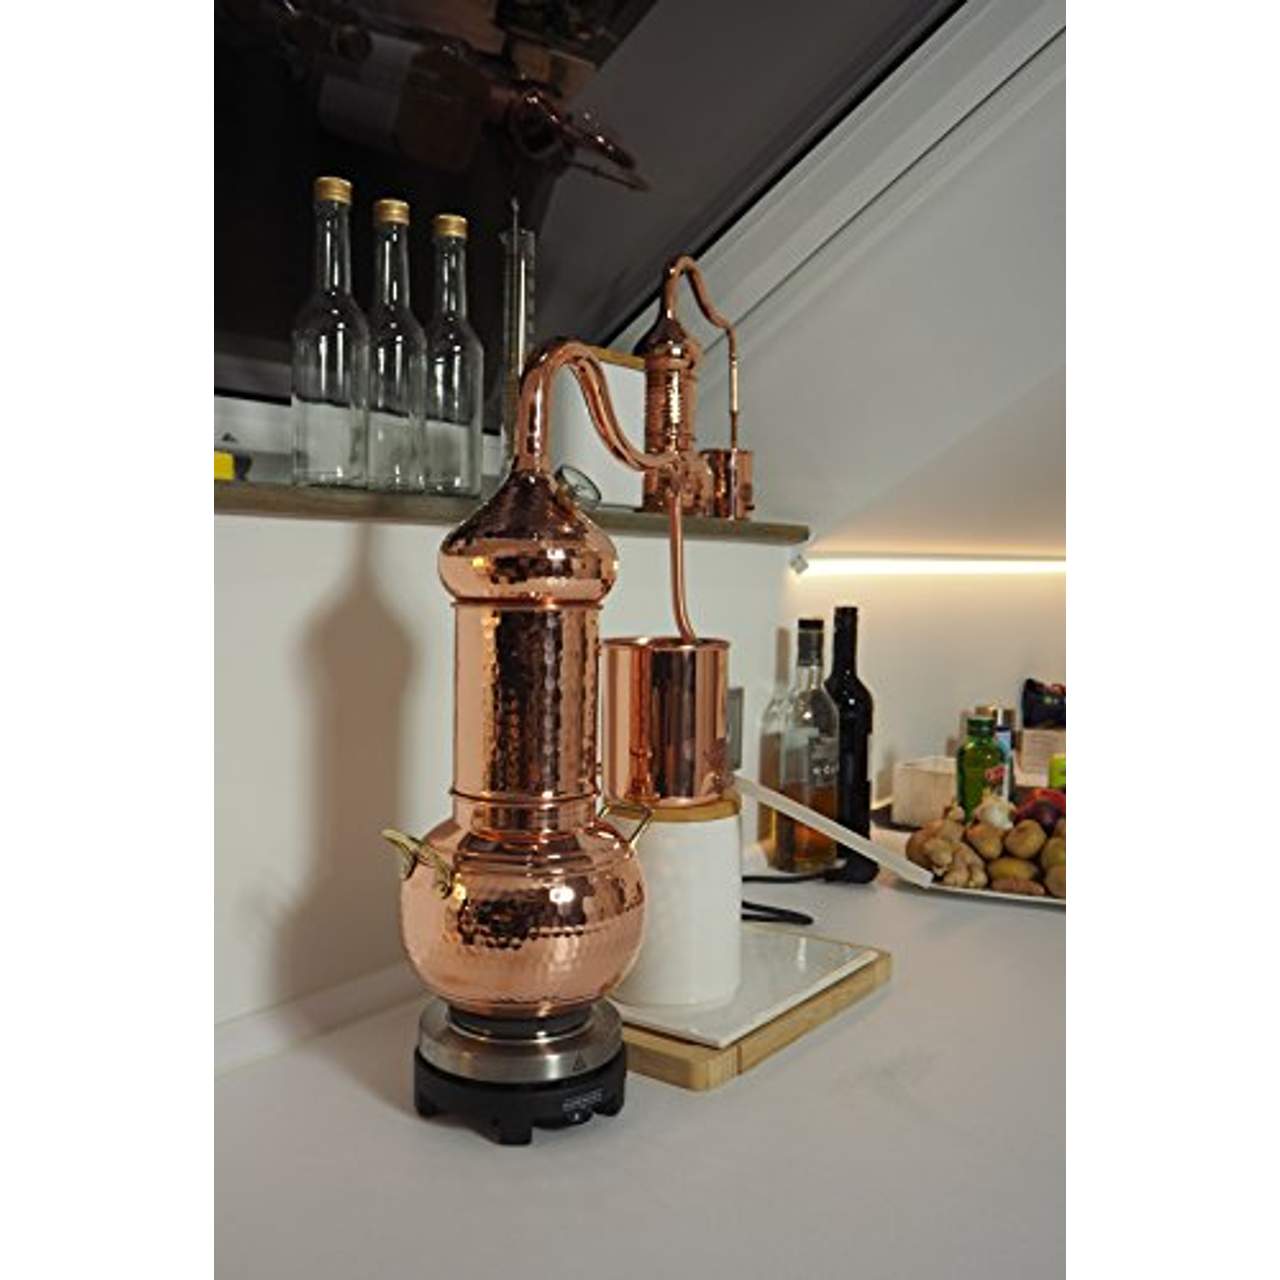 Copper Garden Destille Essence 2 Liter